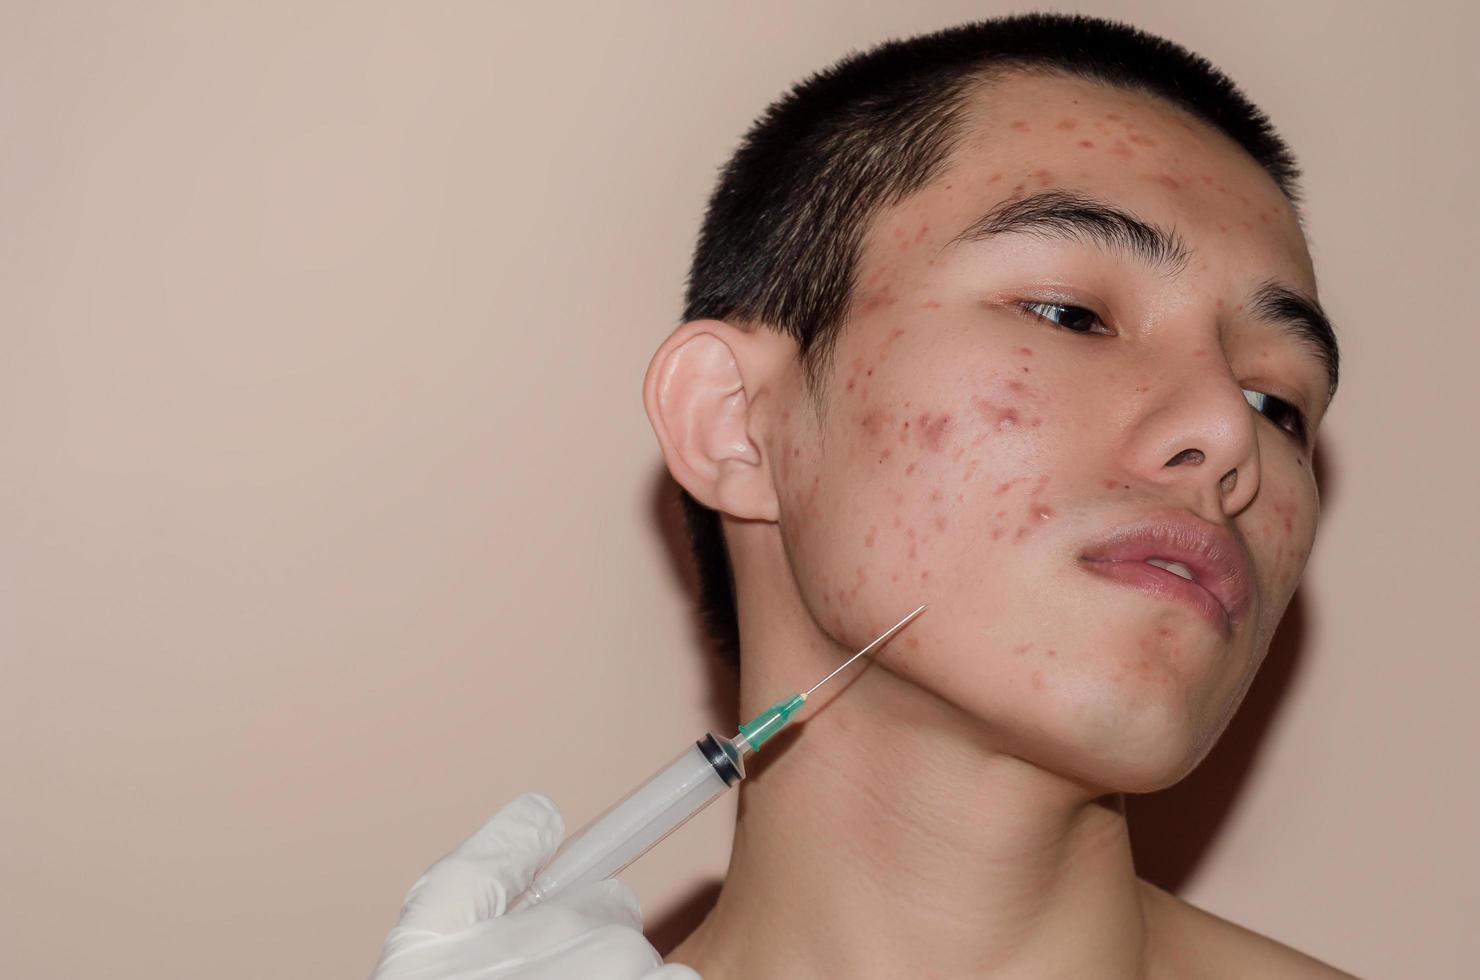 de littekens en rimpels veroorzaakt door acne op de huid door hormoon of vuil. foto